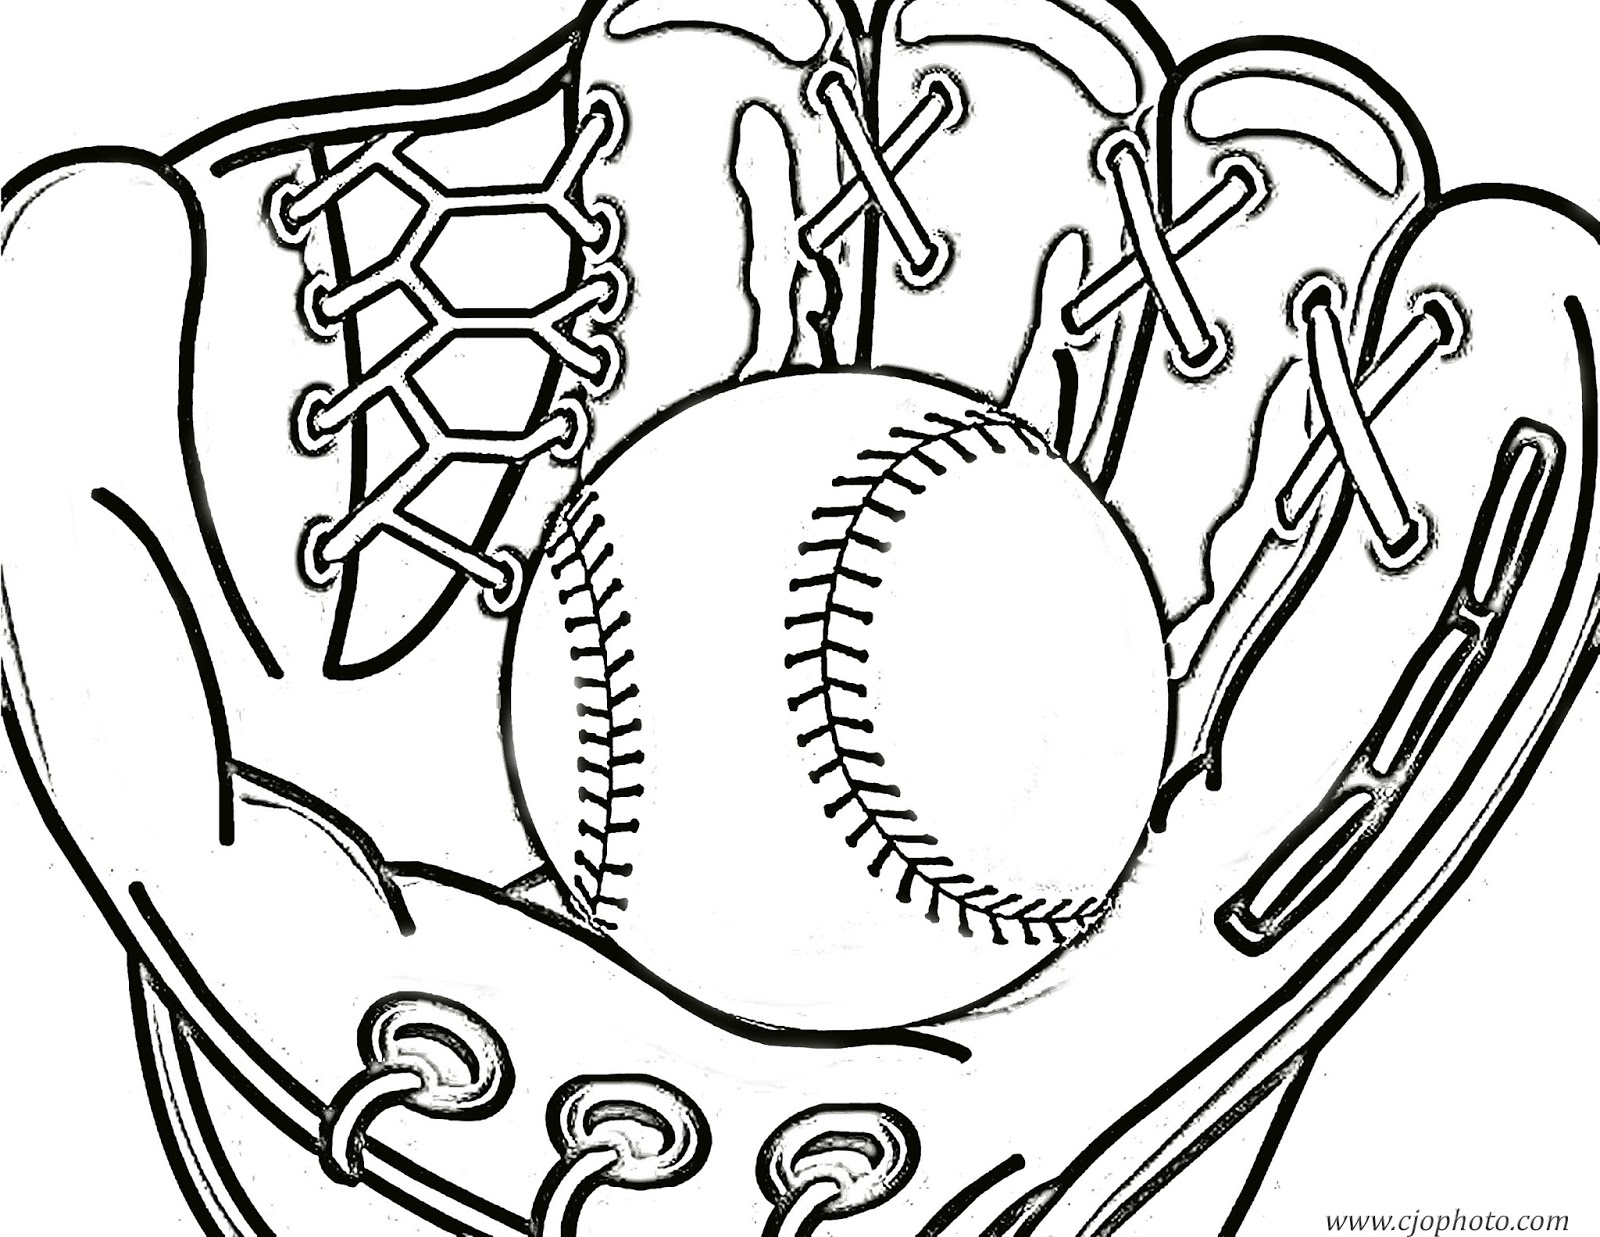 cjo-photo-baseball-coloring-page